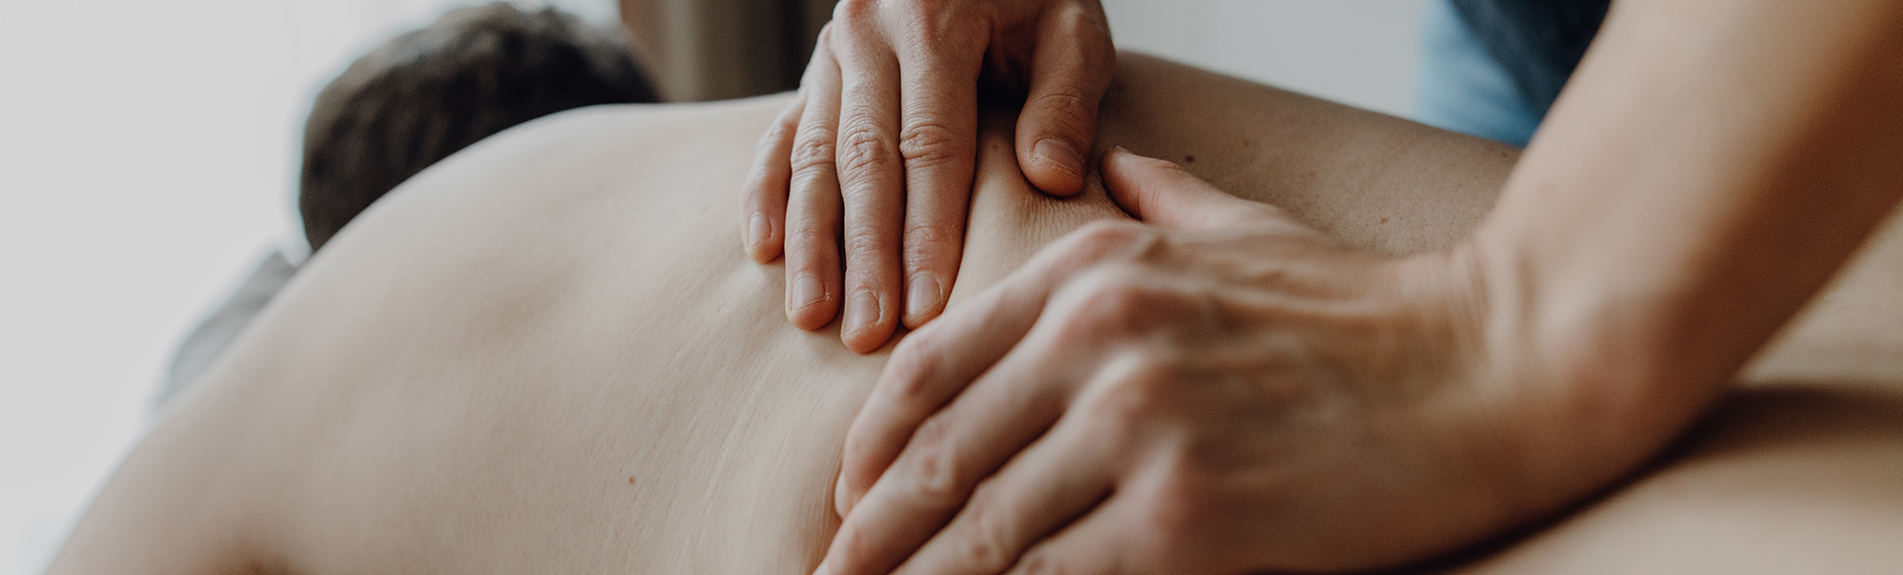 Physiotherapeut massiert Rücken eines Patienten